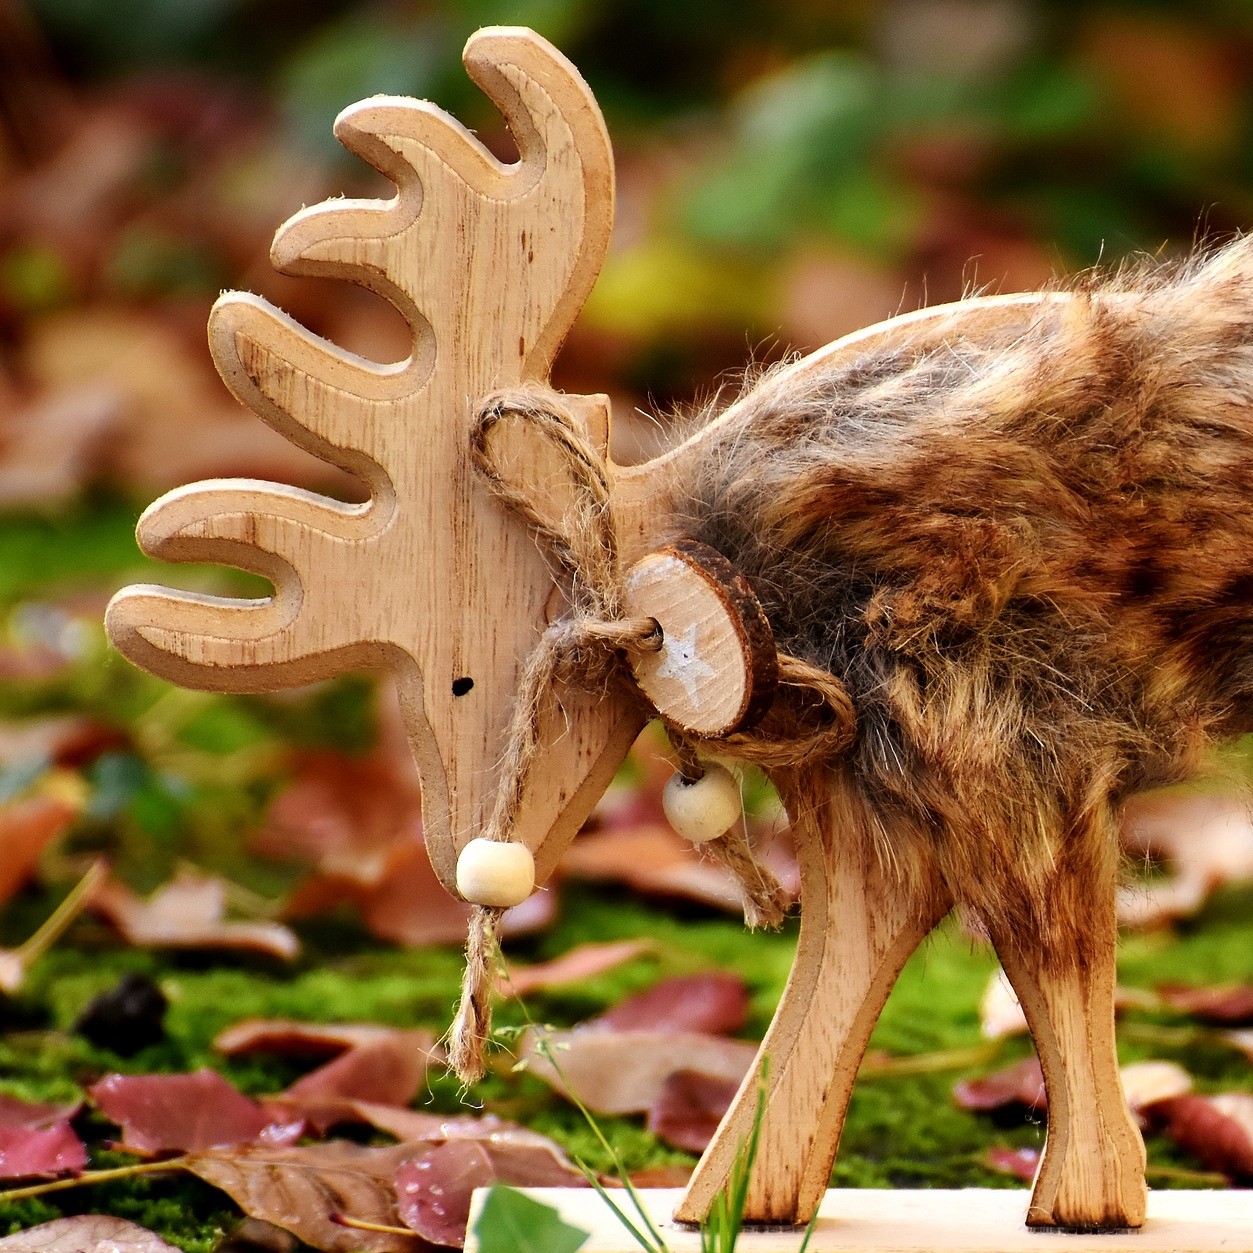 Wood carving of a deer